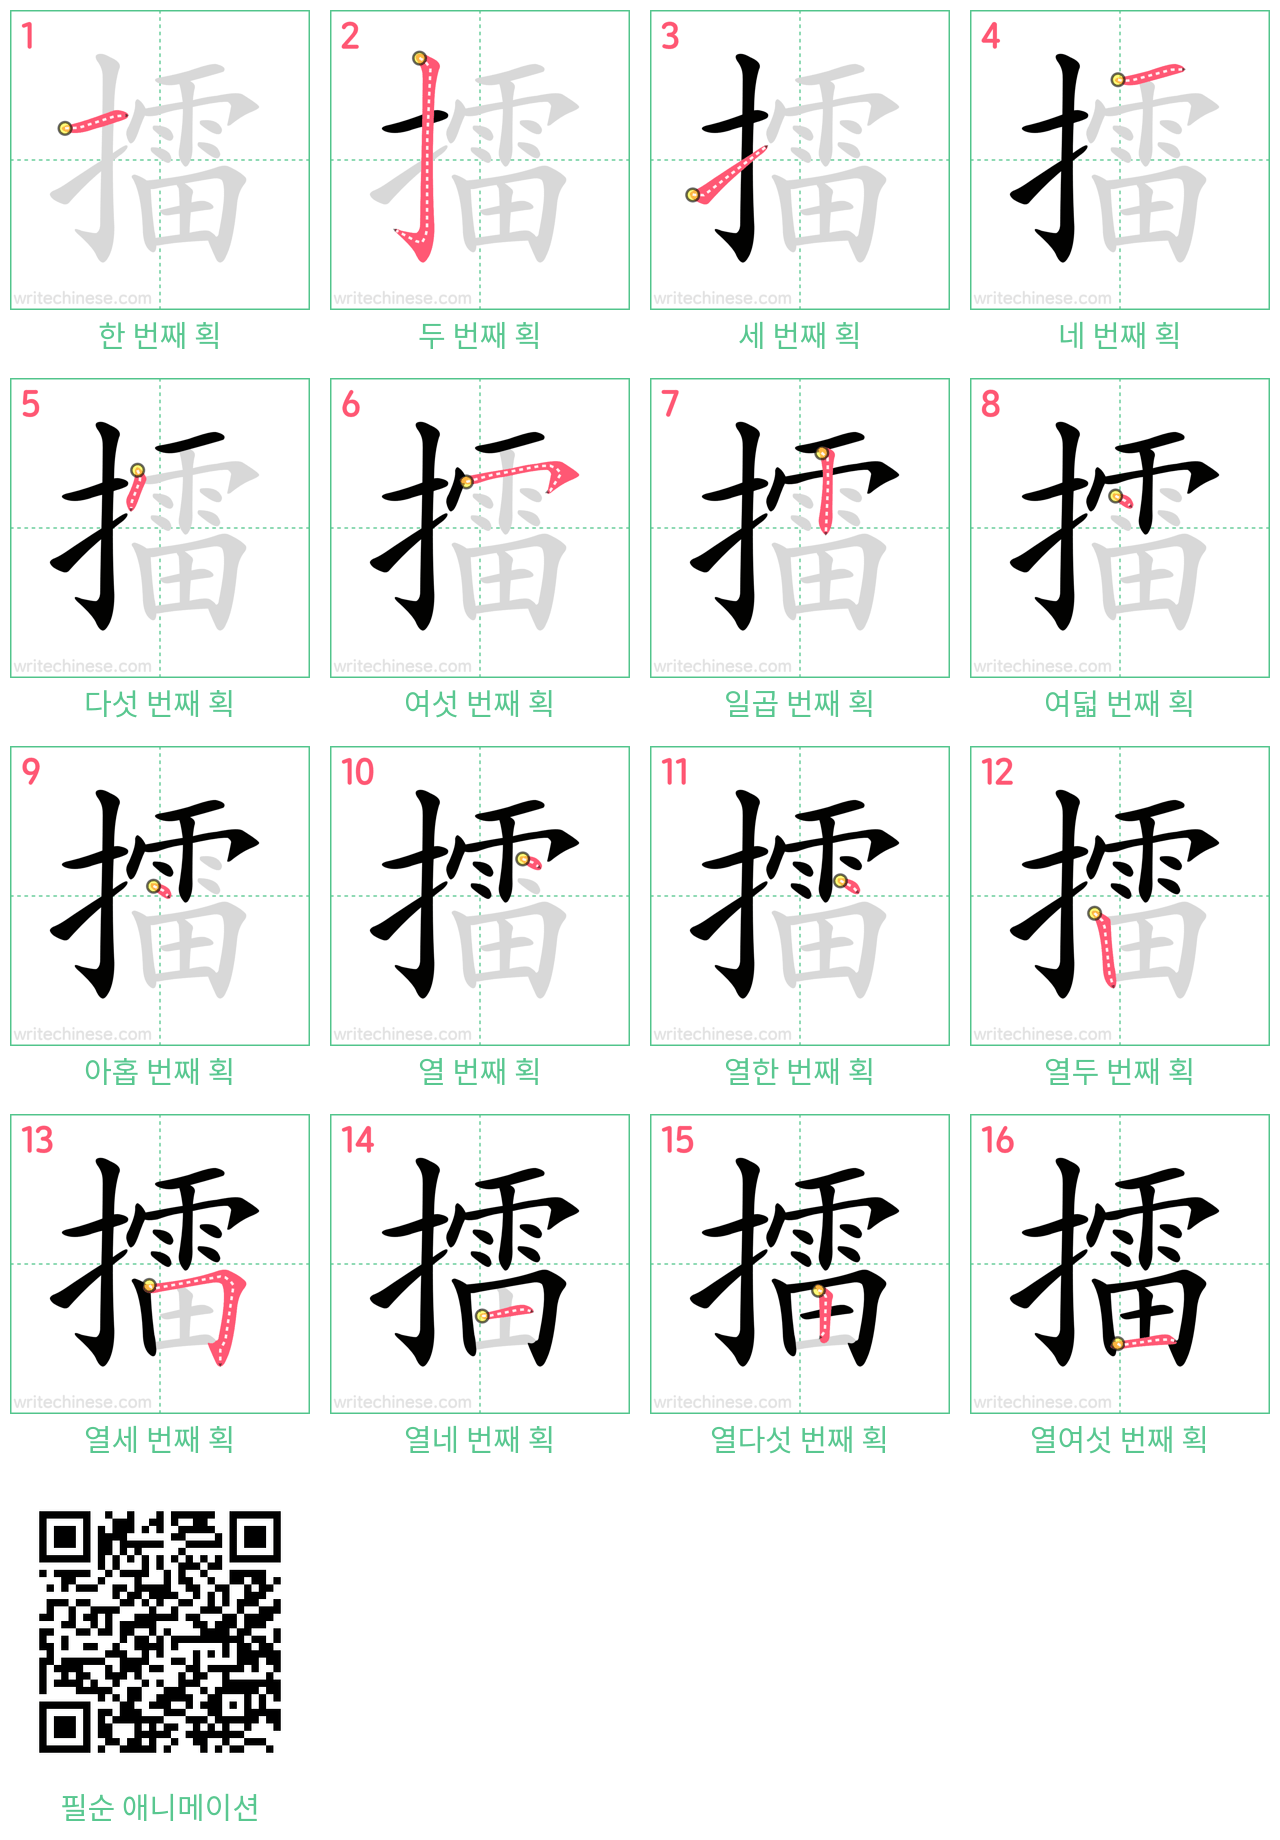 擂 step-by-step stroke order diagrams